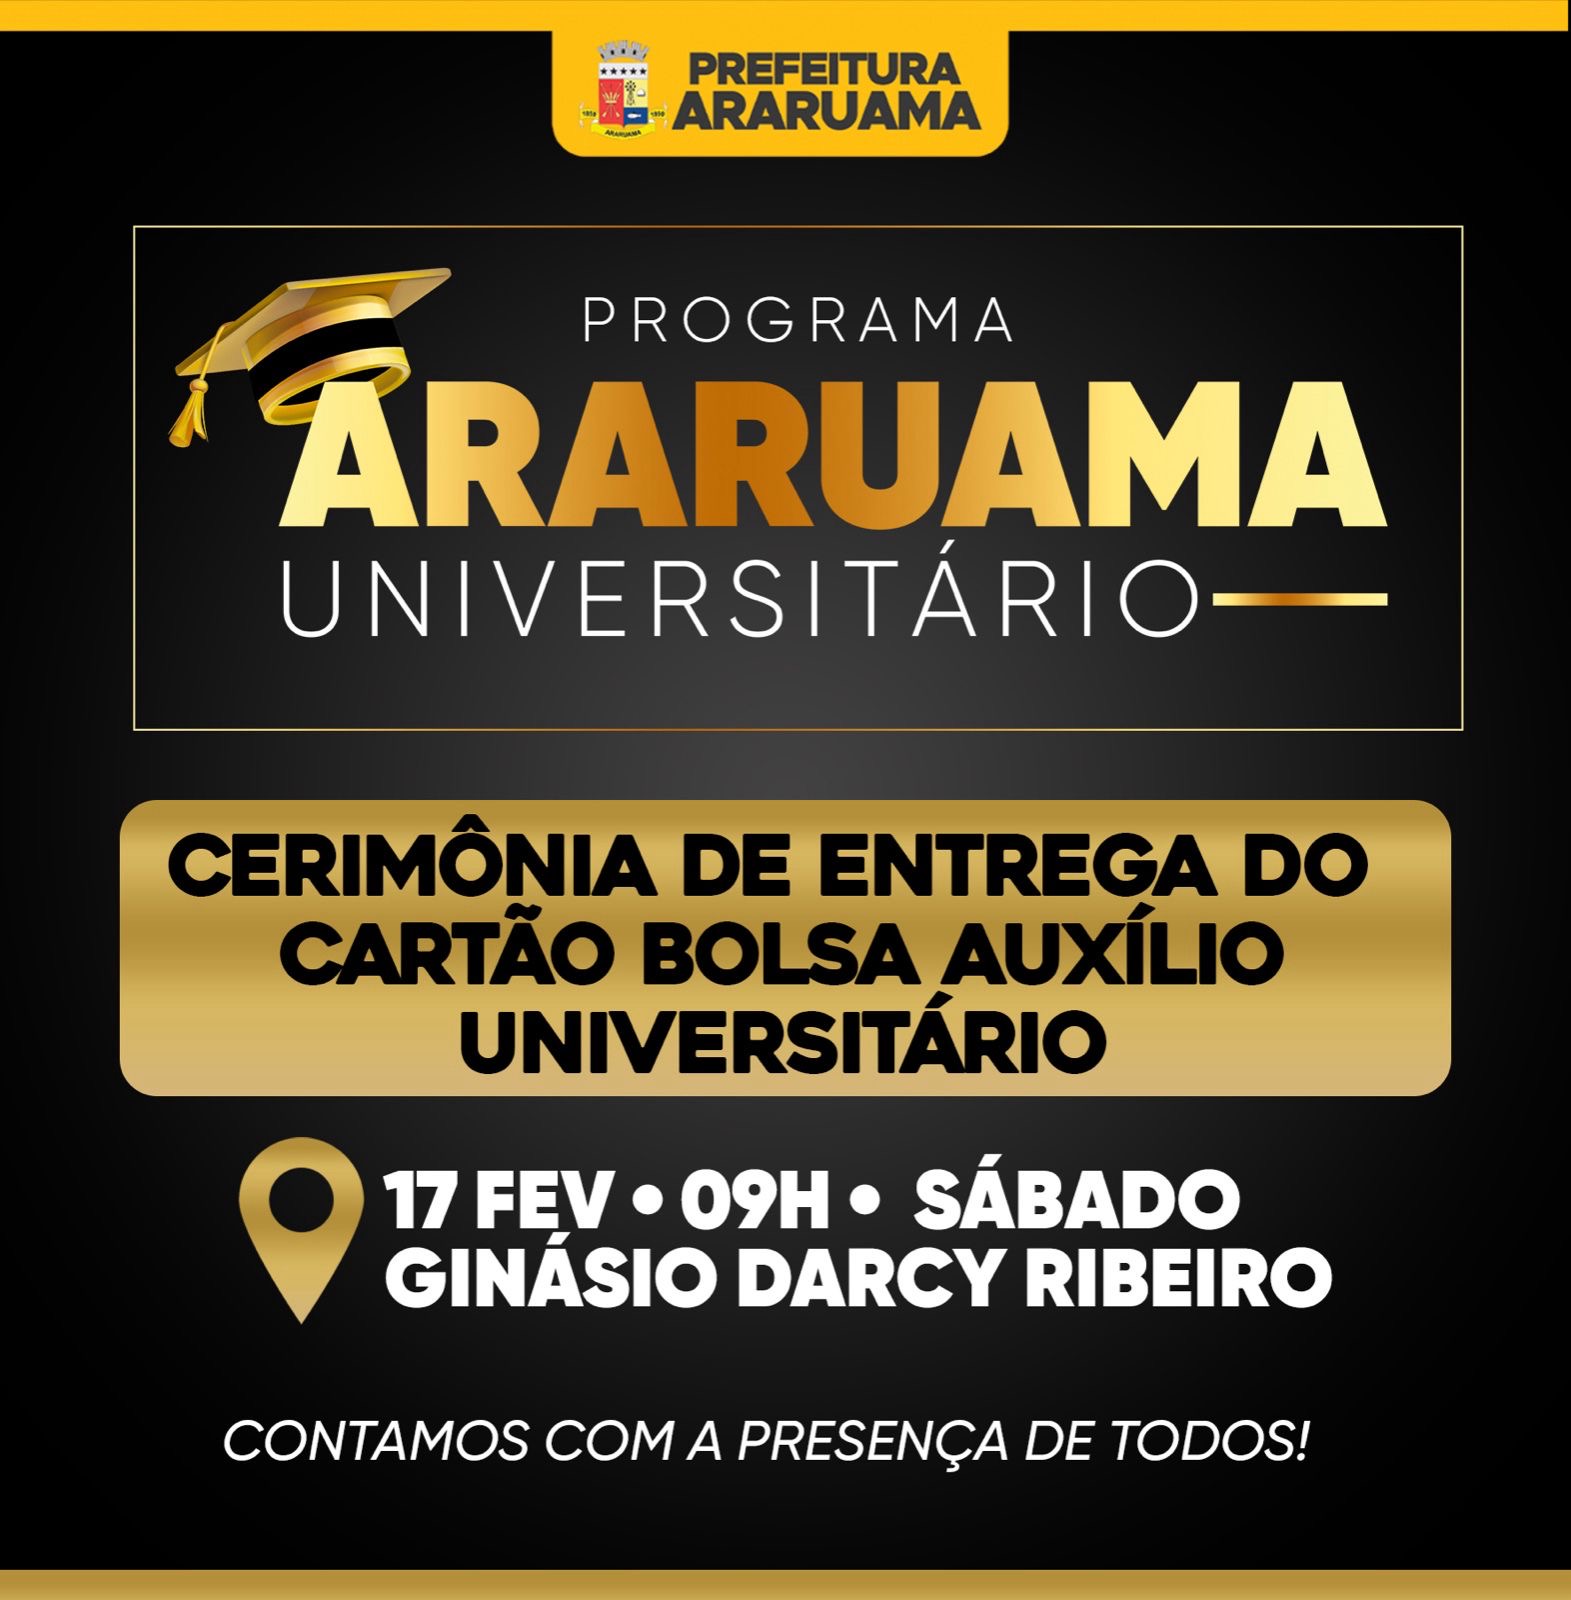 Prefeitura de Araruama vai realizar a Cerimônia de entrega do cartão Bolsa Auxílio Universitário, nesse sábado